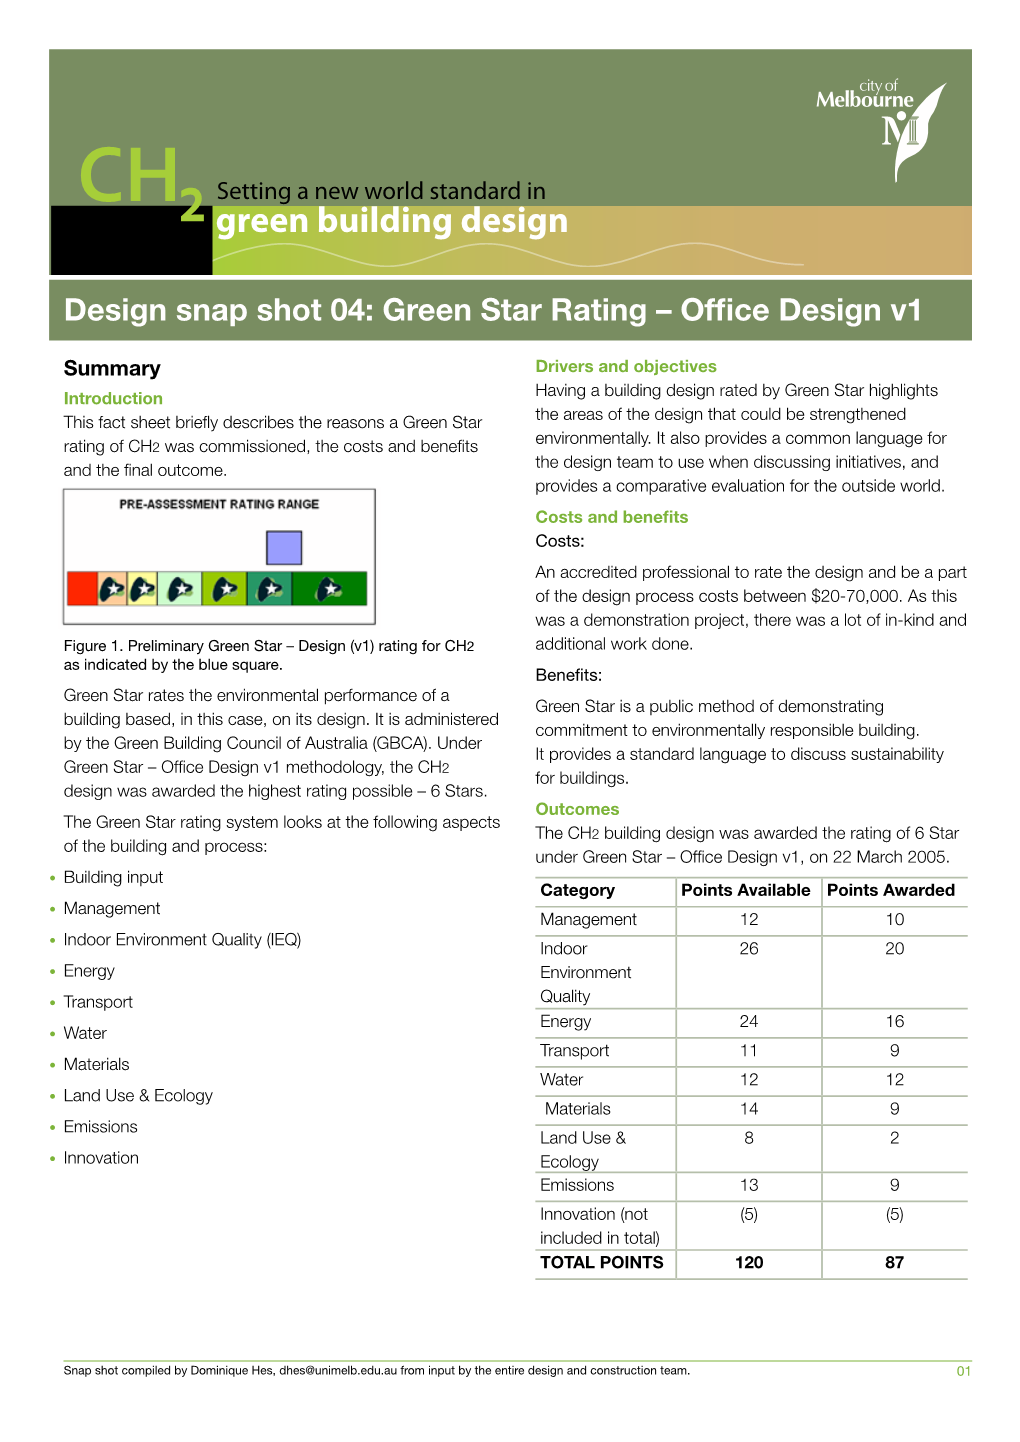 Green Star Rating – Office Design V1